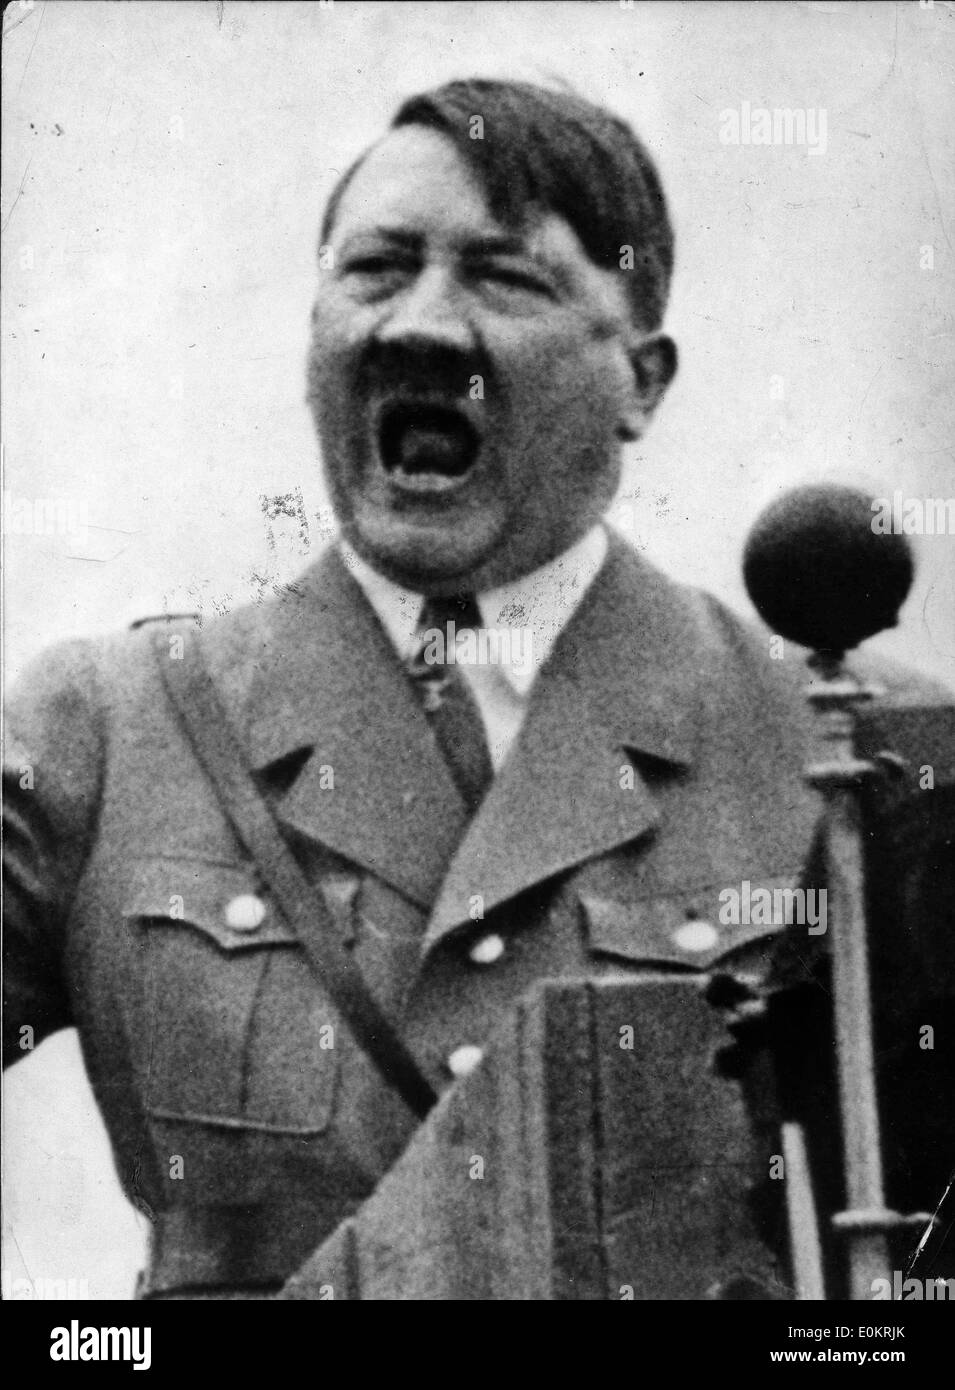 Adolf Hitler giving a powerful speech Stock Photo